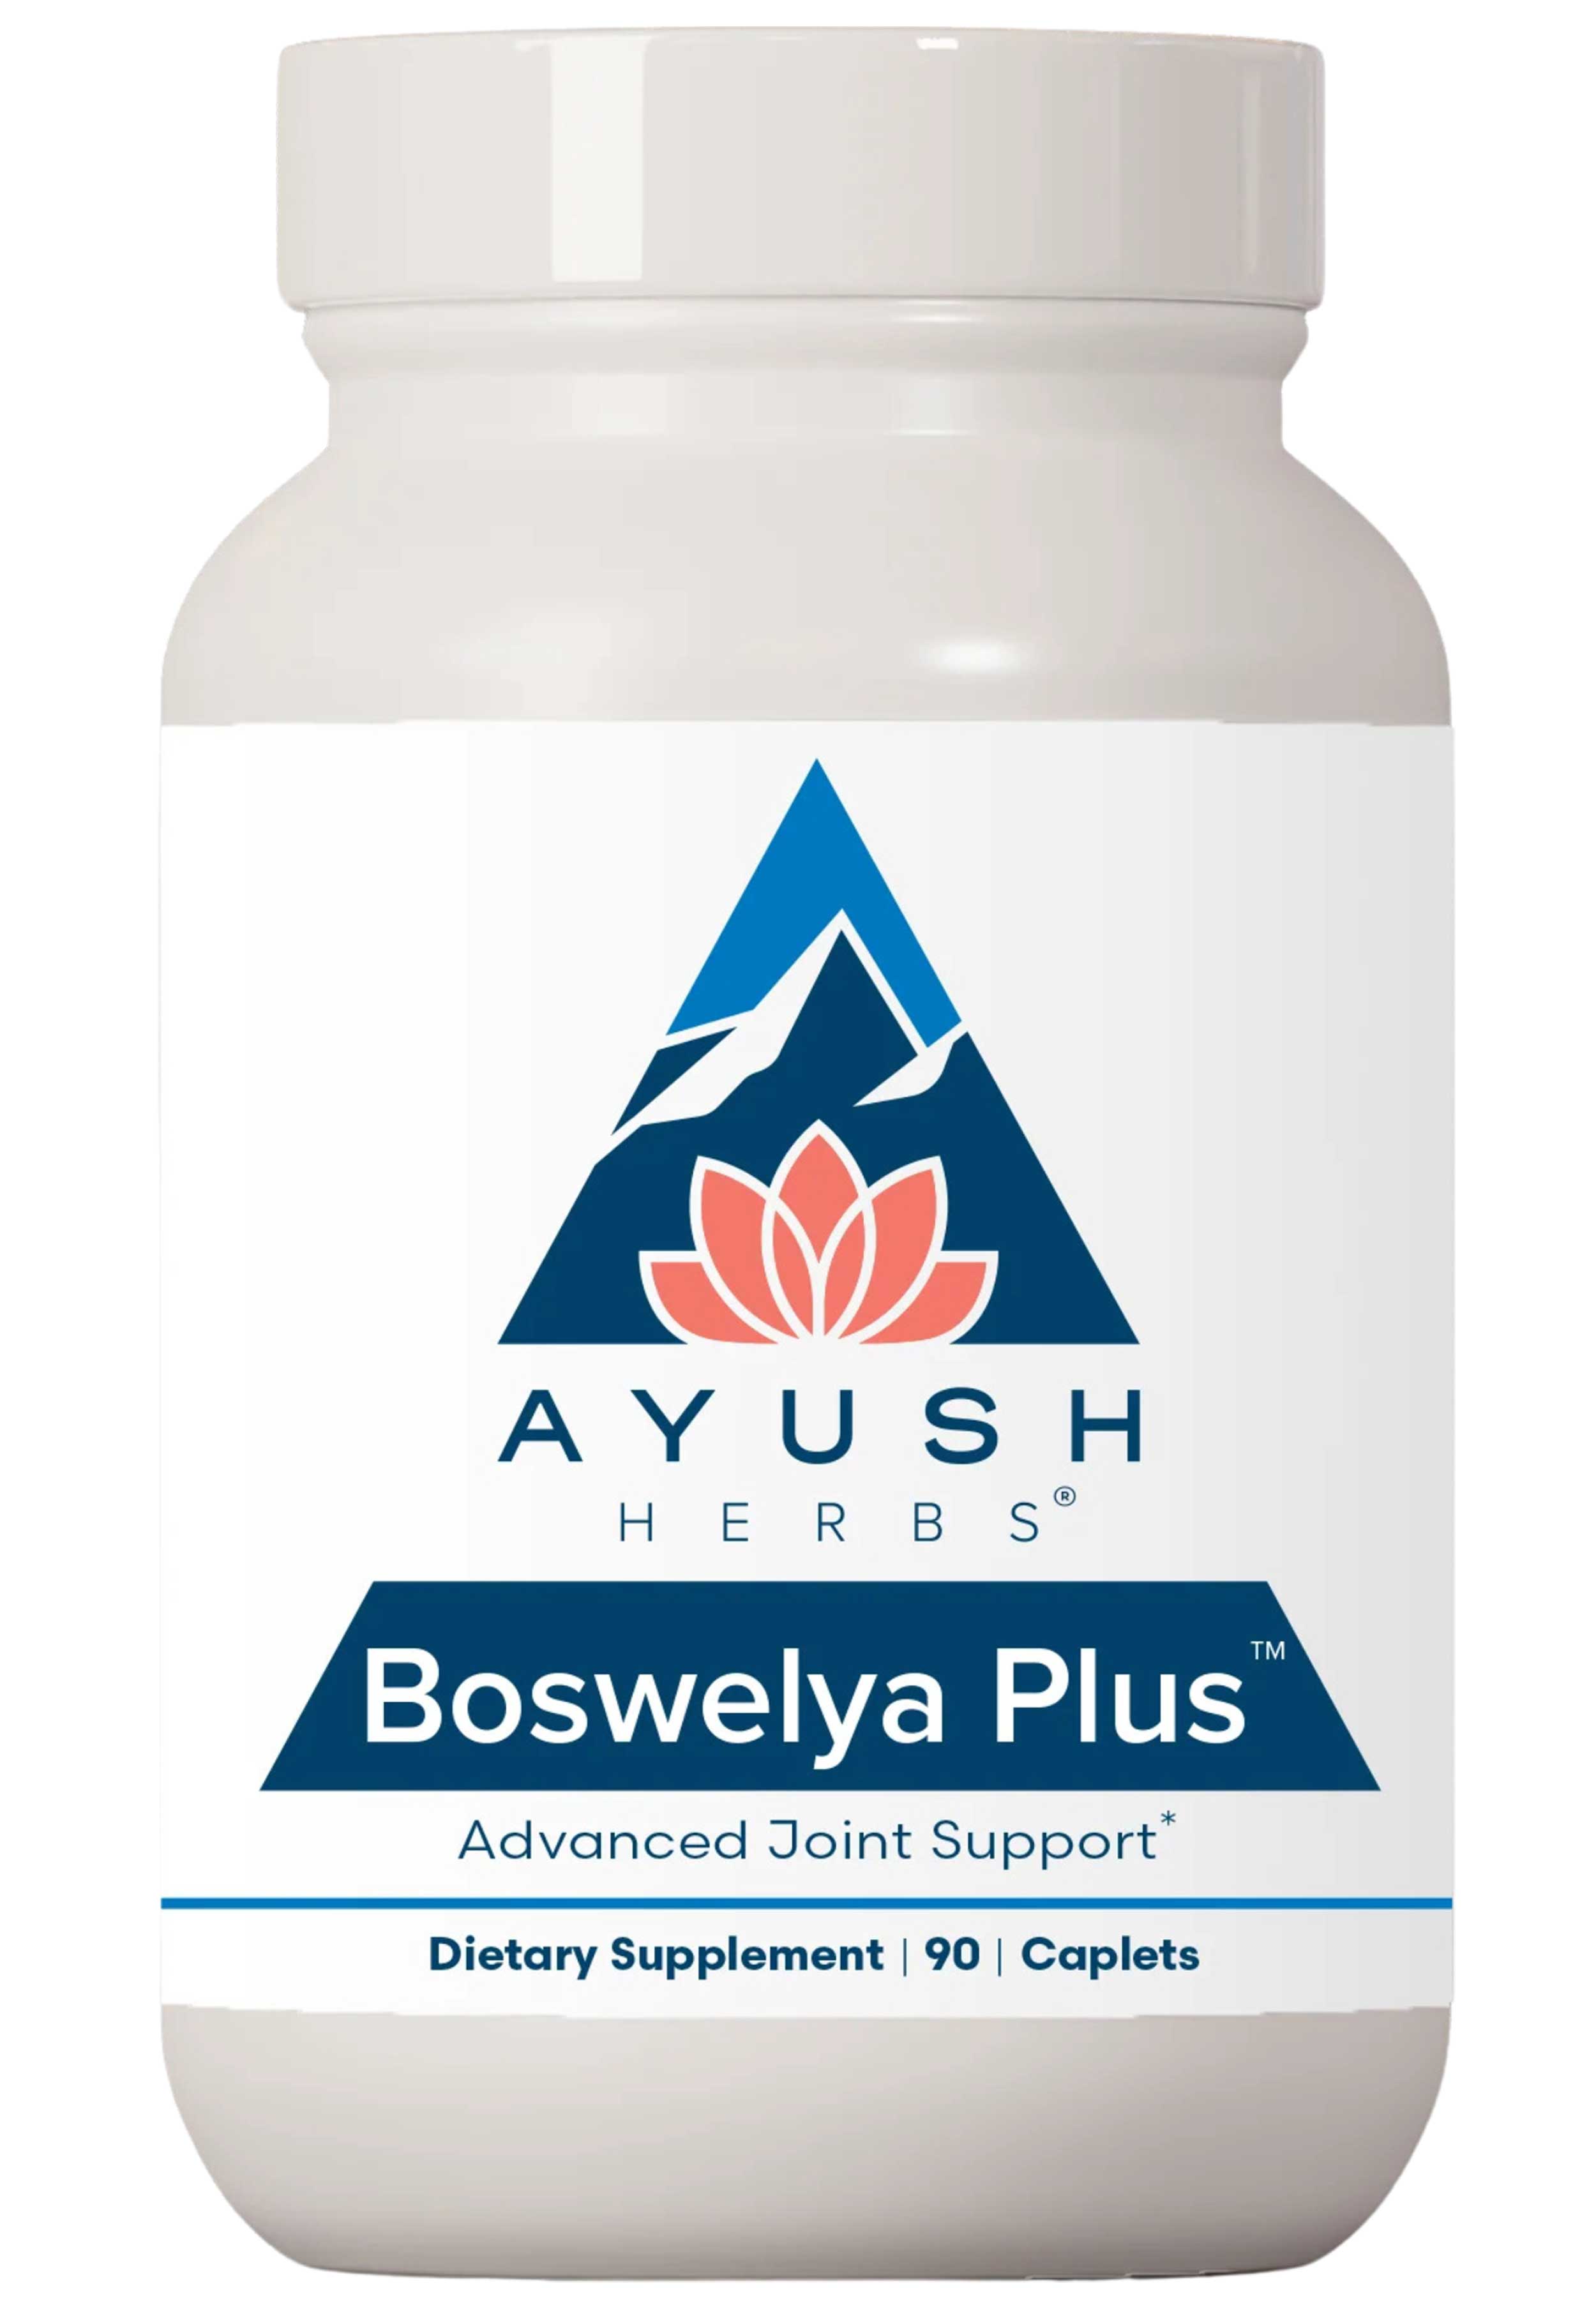 Ayush Herbs Boswelya Plus